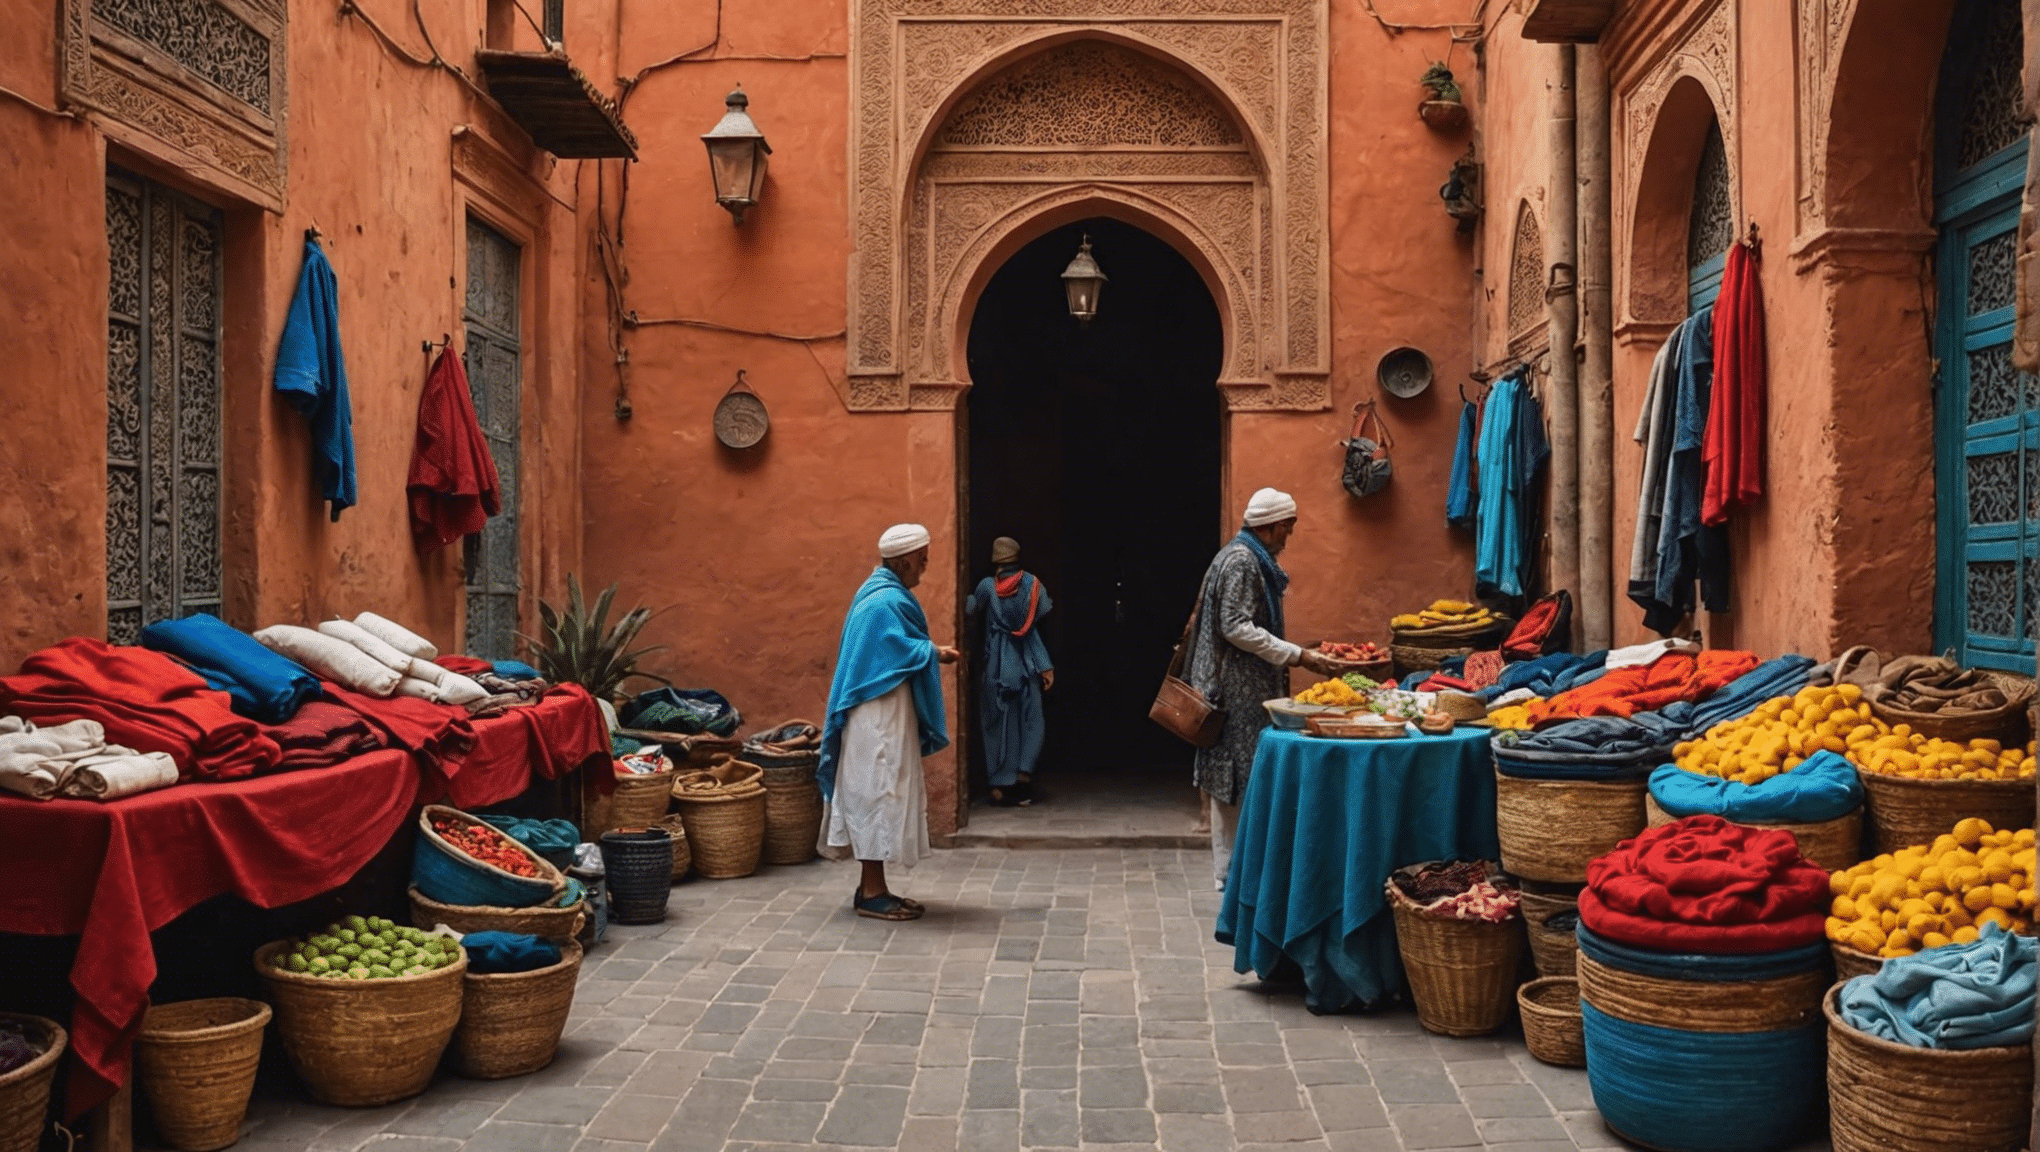 découvrez les articles essentiels à emporter pour votre aventure inoubliable à Marrakech en avril avec notre guide complet.